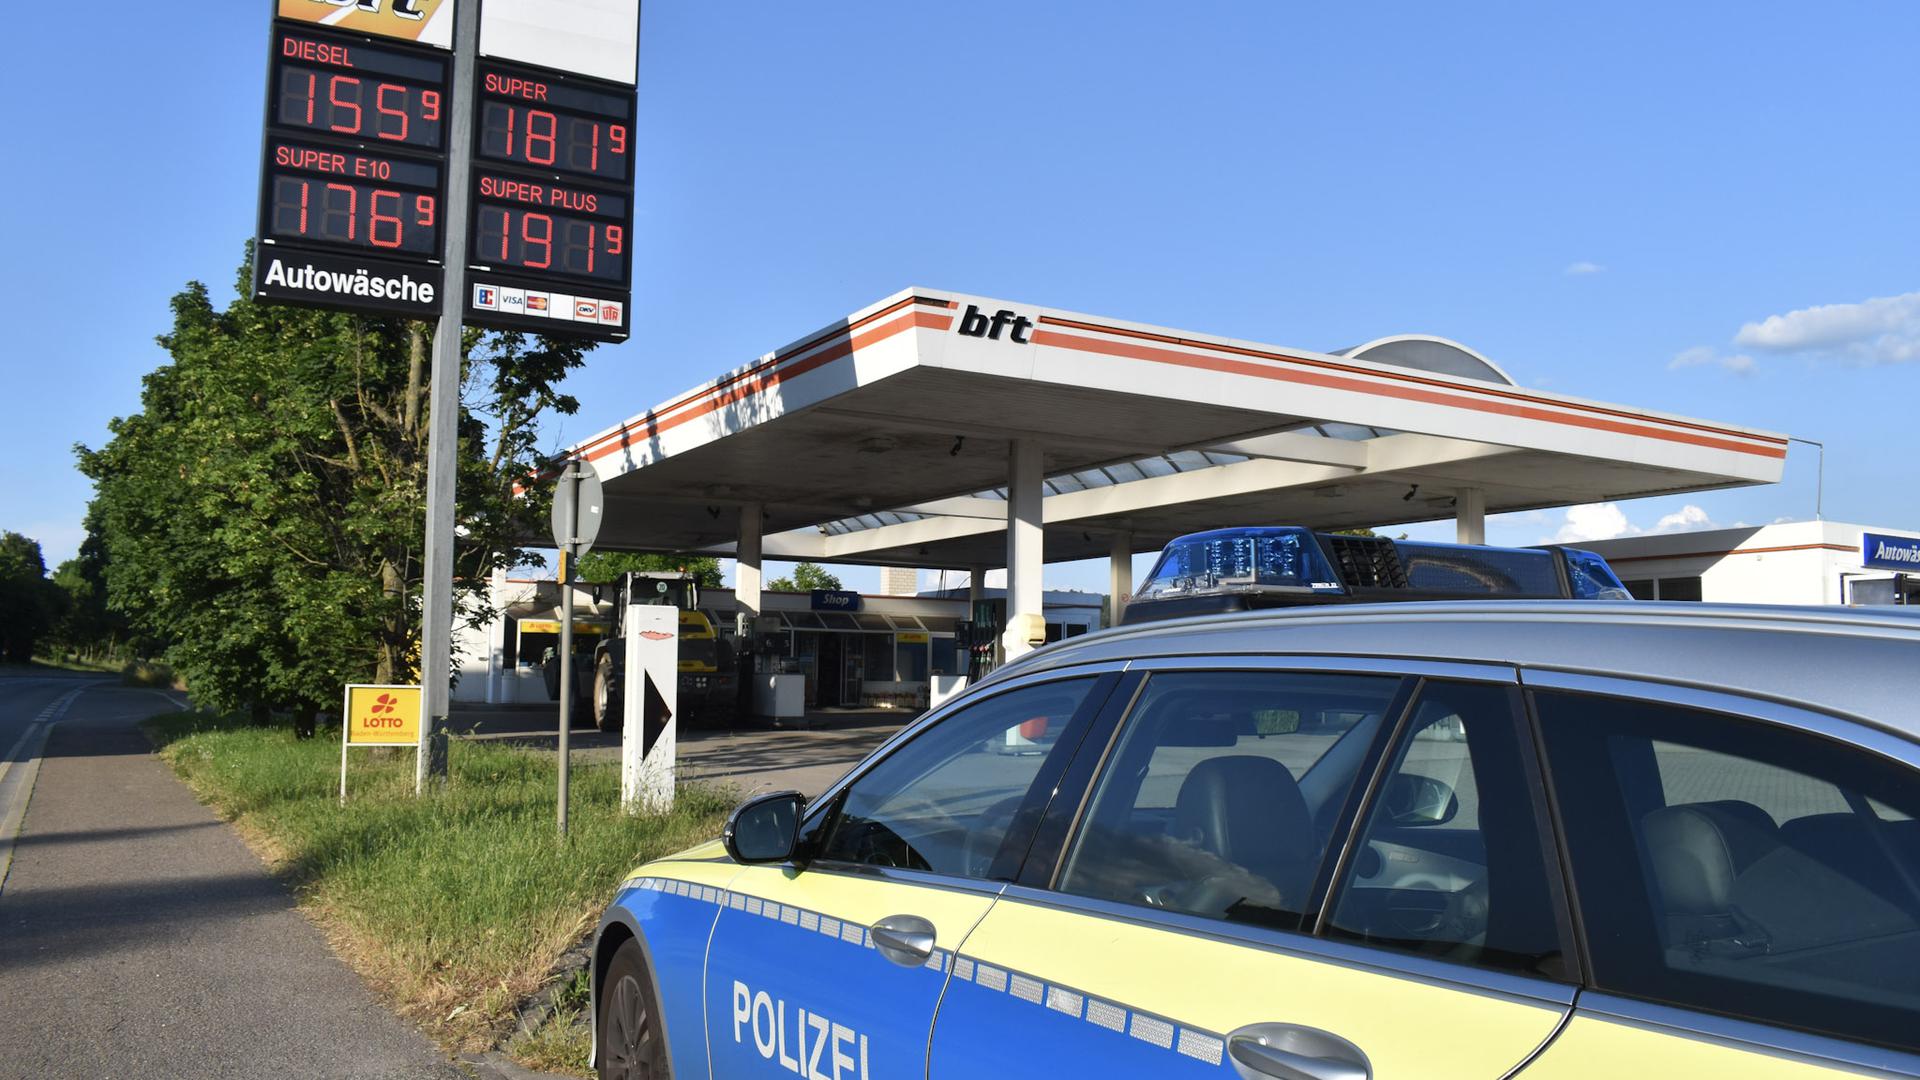 Die bft-Tankstelle in Pforzheim wurde überfallen. Die Polizei fahndet nach dem Täter.